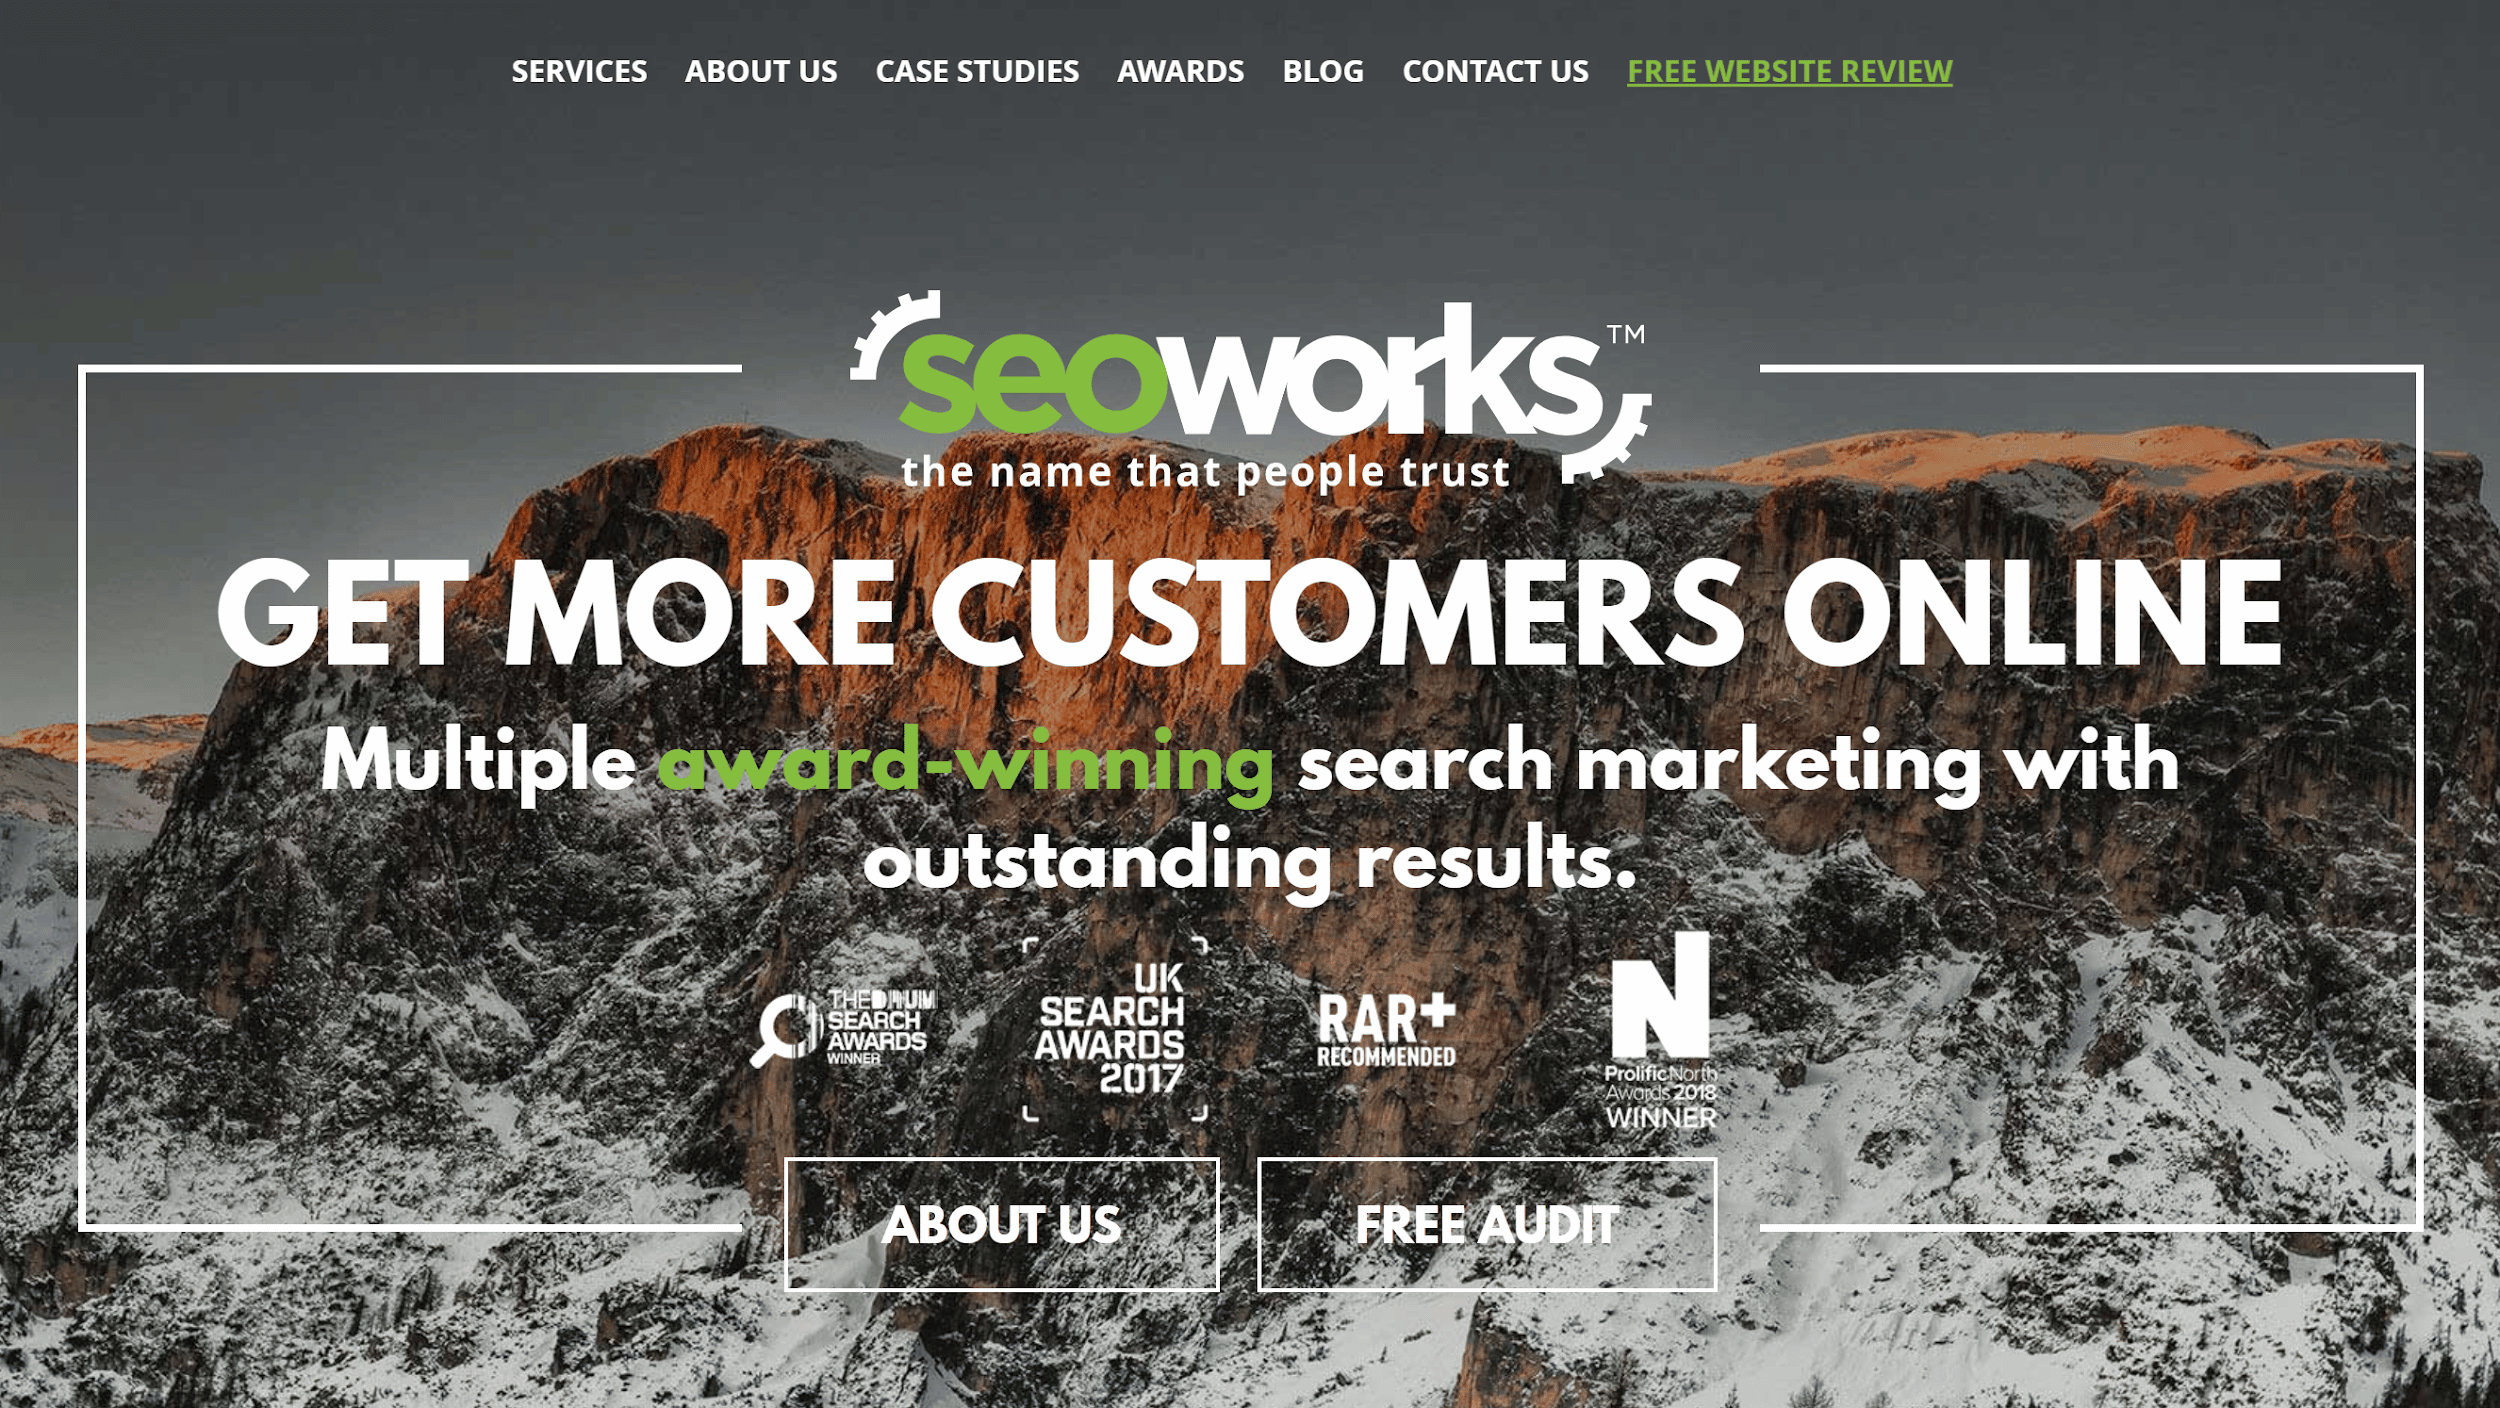 SEO Works website homepage